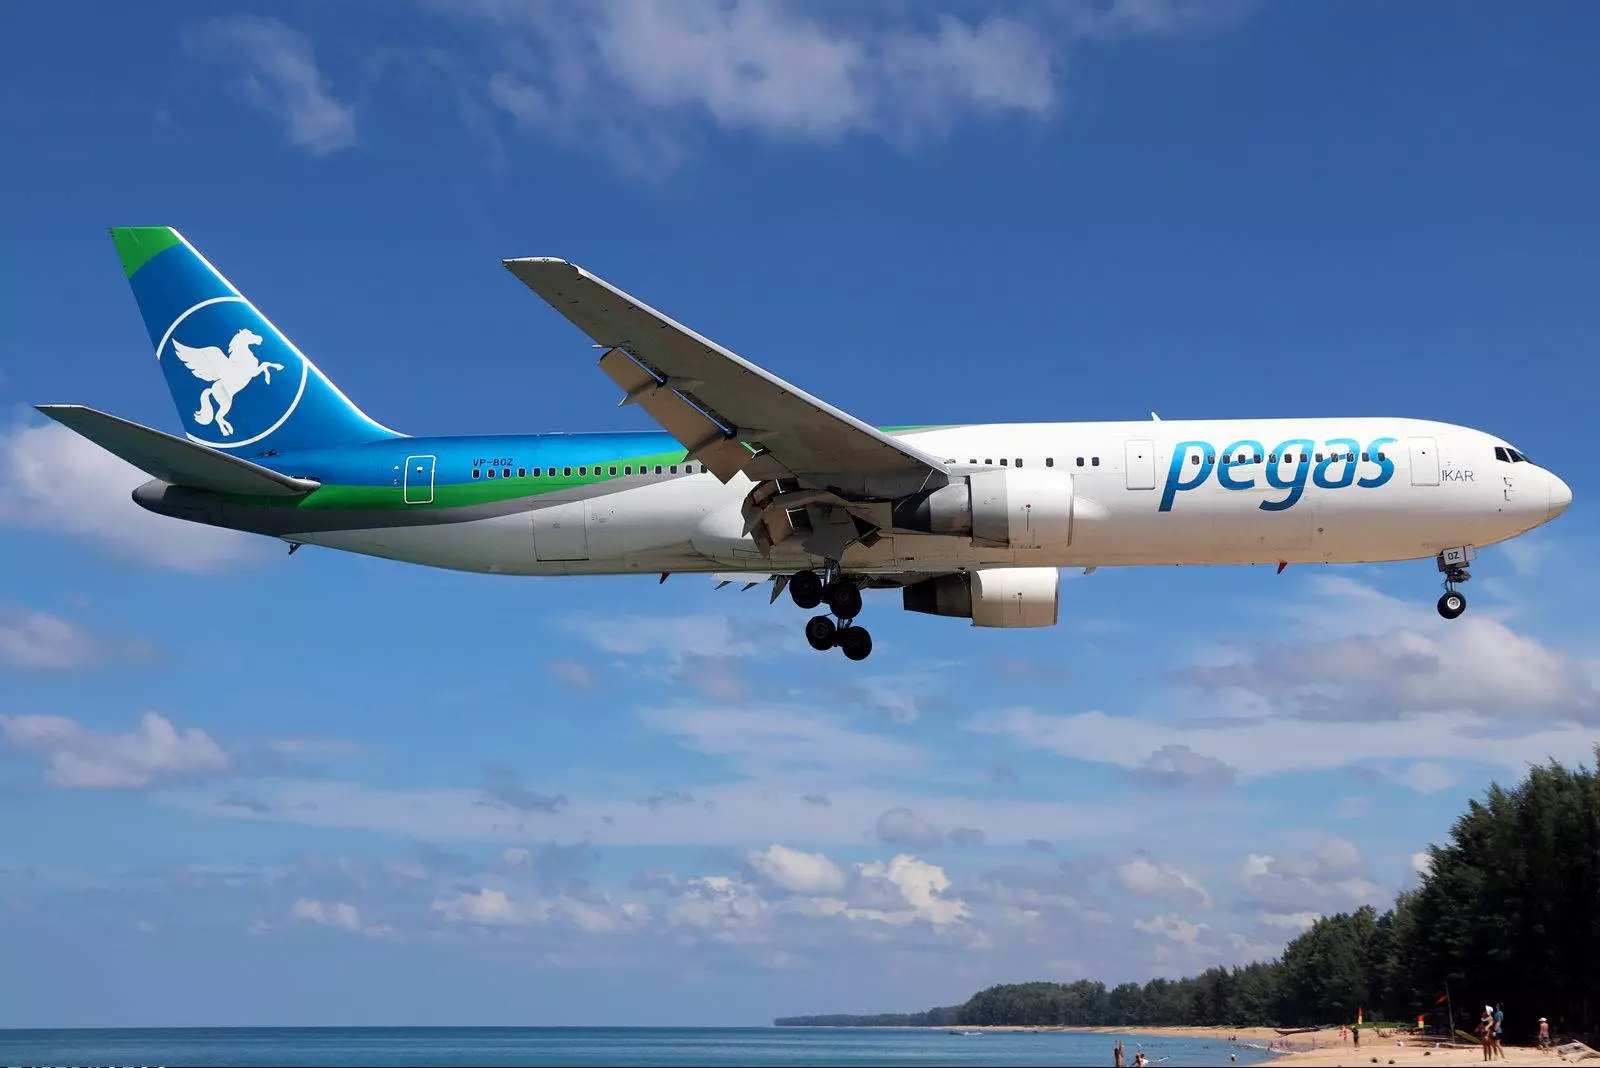 Авиакомпания пегас флай (pegas fly) - официальный сайт, телефон горячей линии, отзывы